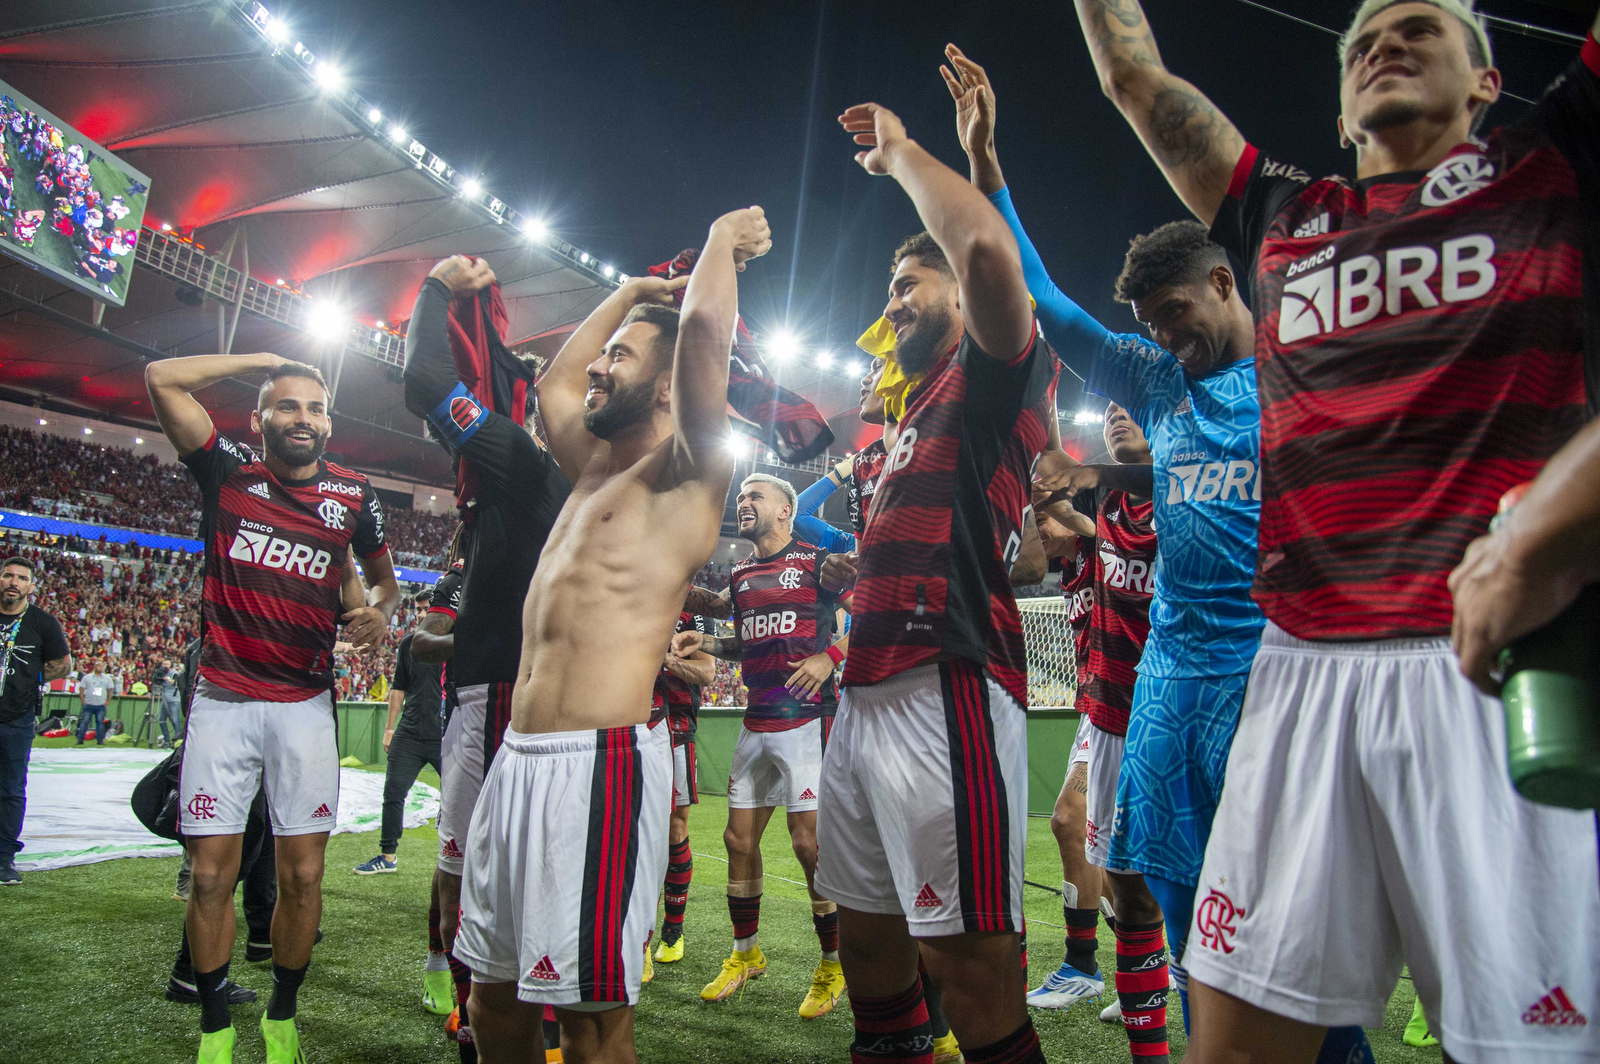 Flamengo x São Paulo: quem tem o melhor time? - Lance!